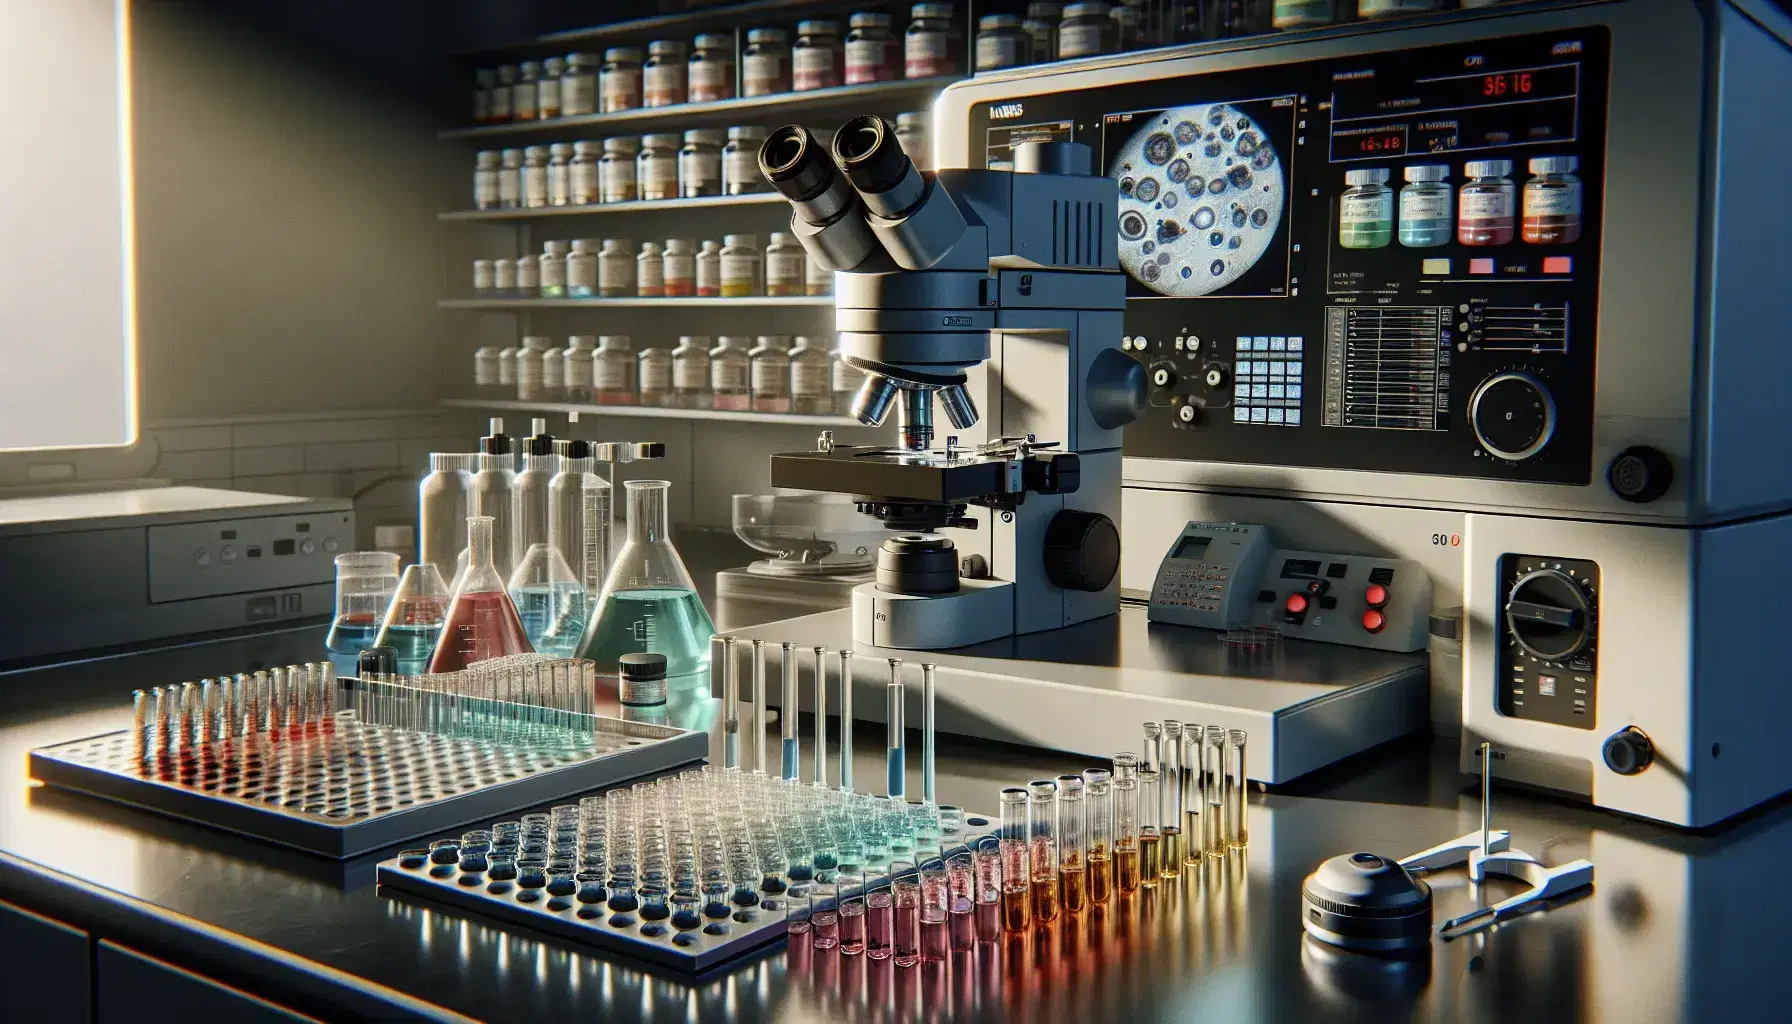 Laboratorio de investigación biomédica con microscopio electrónico, tubos de ensayo con tapas coloridas y centrífuga blanca, junto a portaobjetos con muestras.